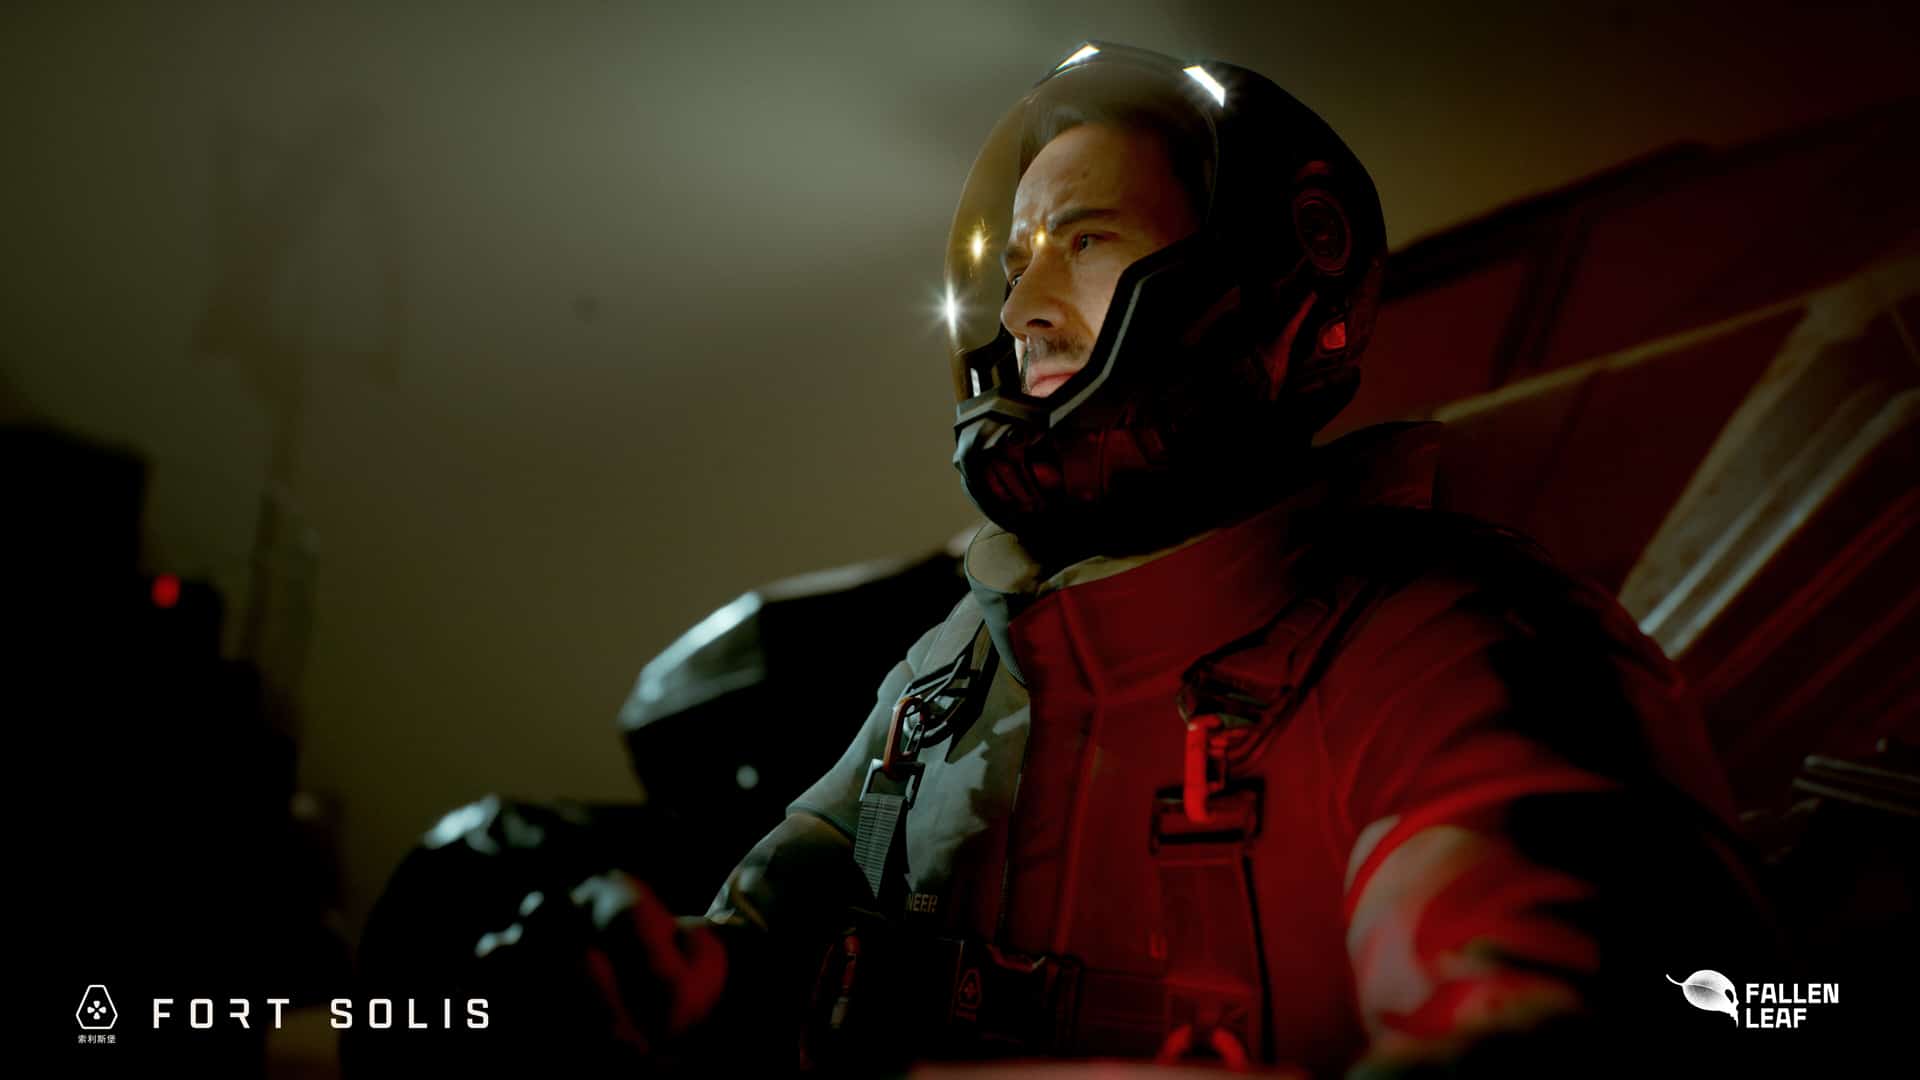 Fort Solis - Der Sci-Fi 3rd-Person-Thriller erscheint im Sommer 2023 auf PC und Next Gen-Plattformen